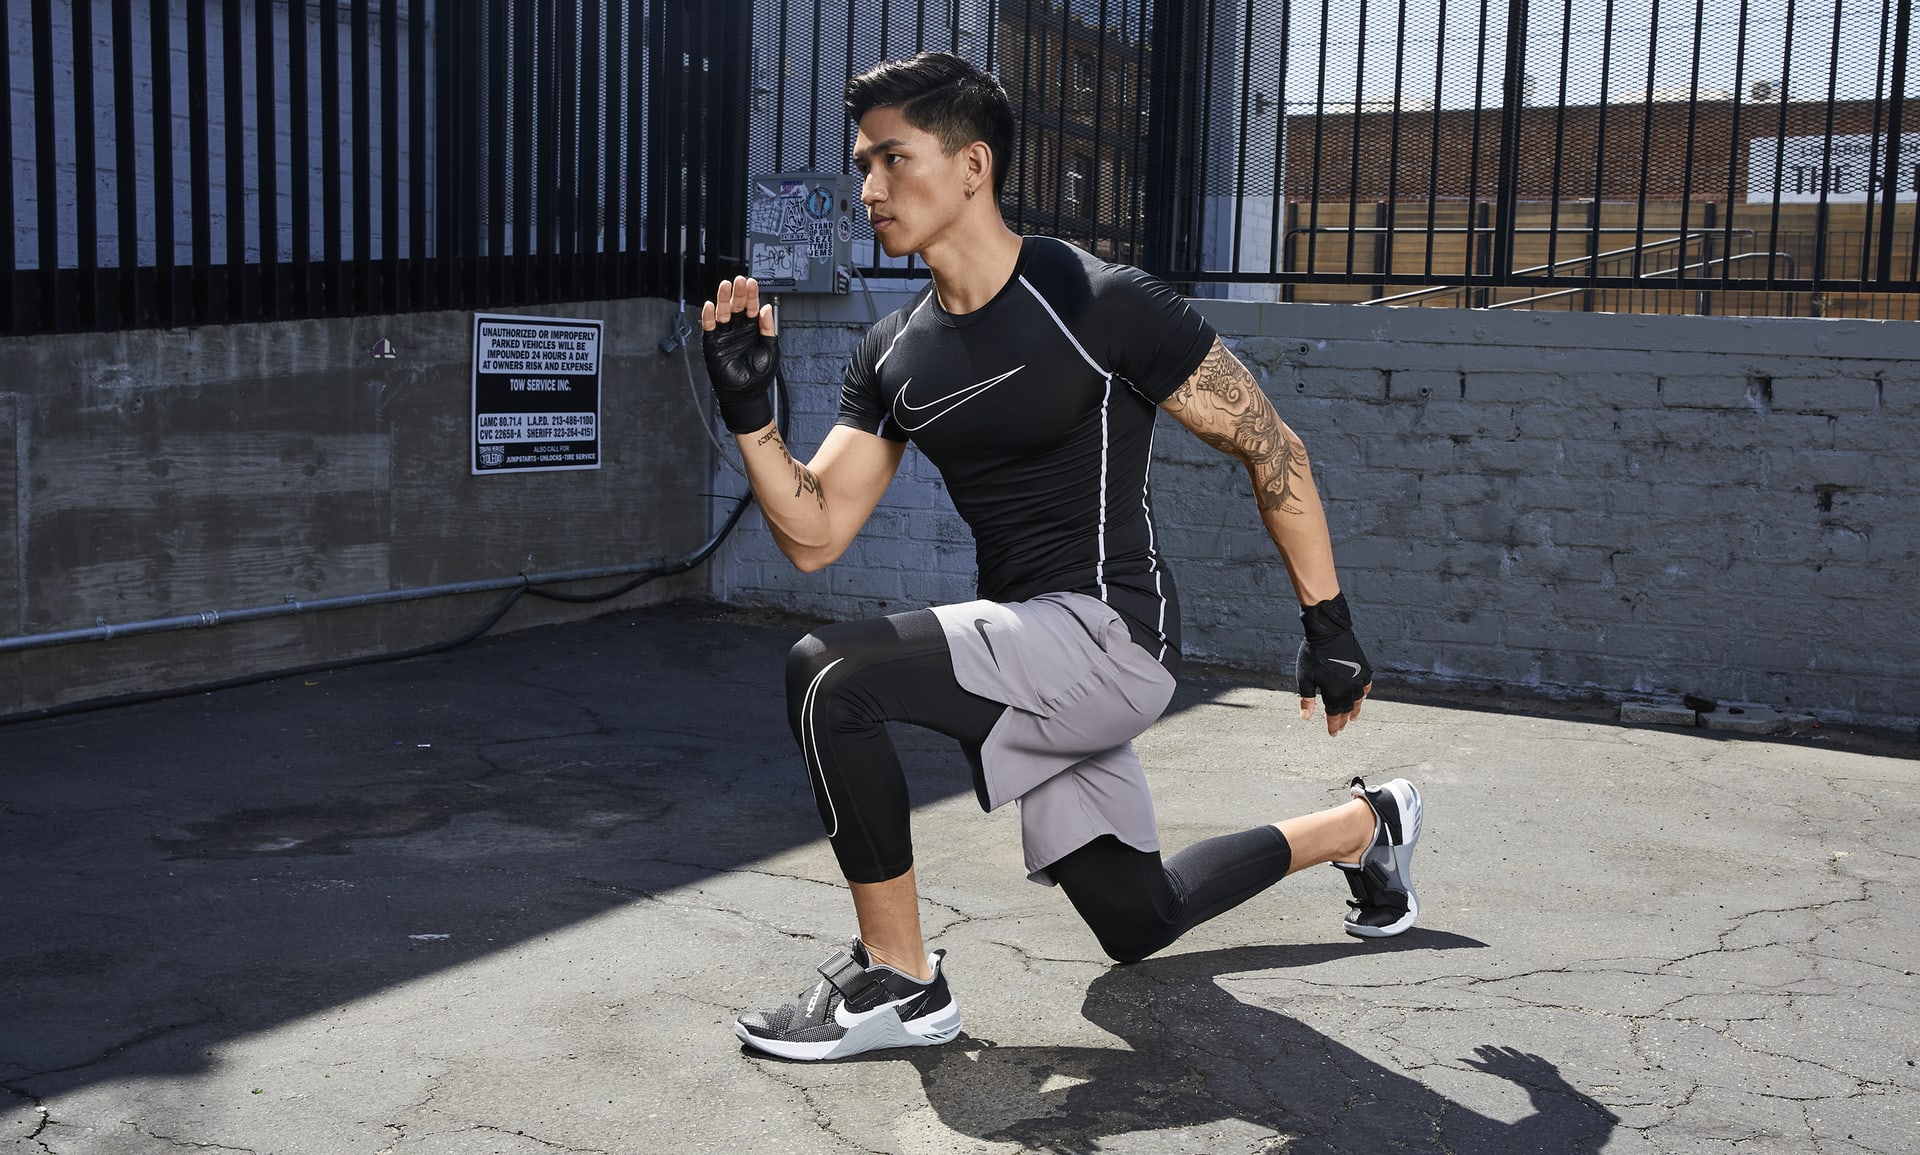 onenigheid Vergelijkbaar Isoleren Nike Pro Dri-FIT Men's Tight Fit Short-Sleeve Top. Nike.com